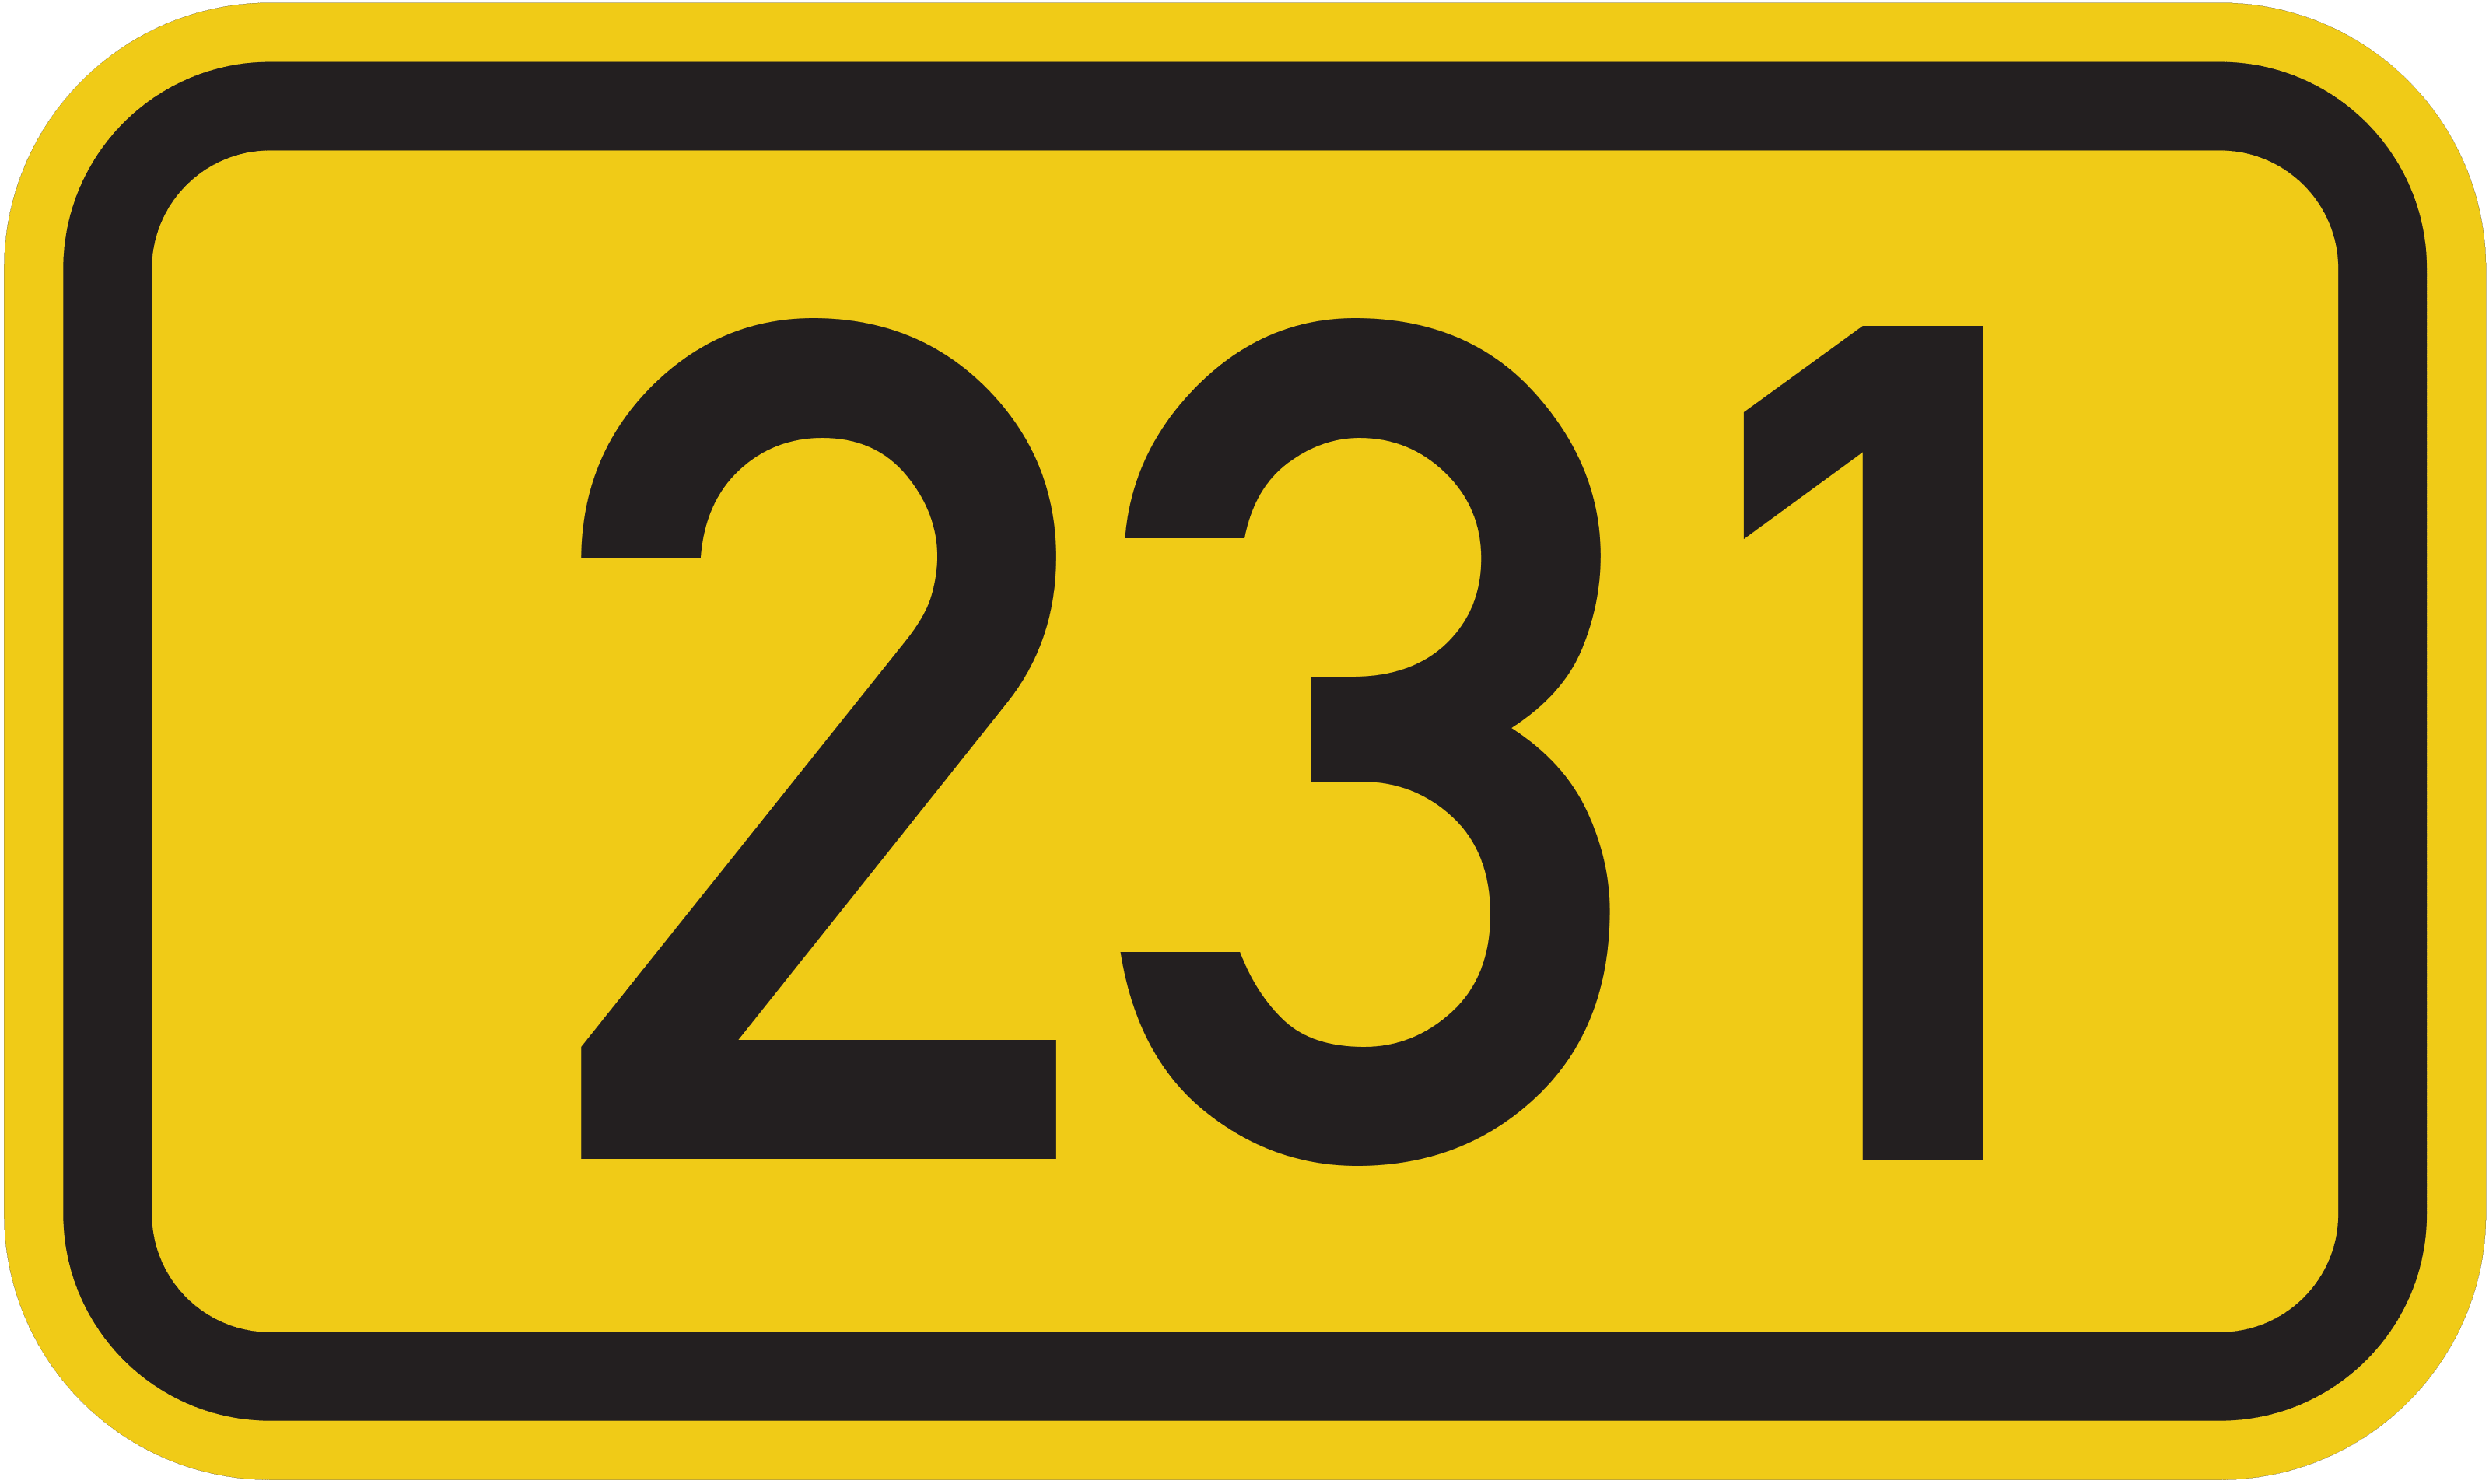 Bundesstraße B 231